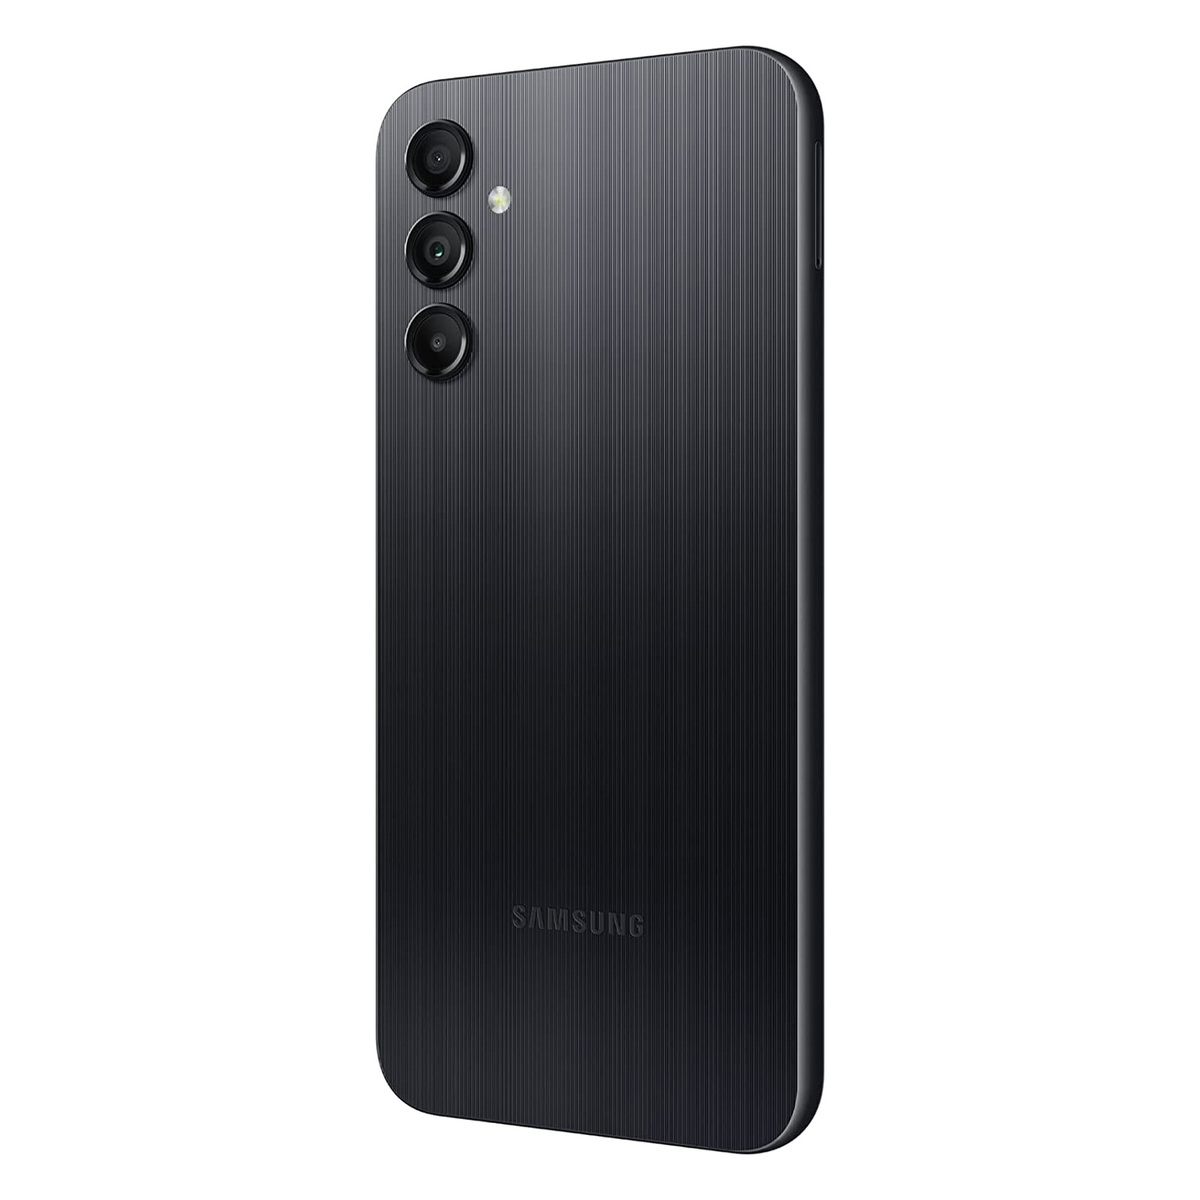 Samsung Galaxy-A14 Dual SIM 4G Smartphone, 4 GB RAM, 64 GB Storage, Black, SM-A145PZKDMEA